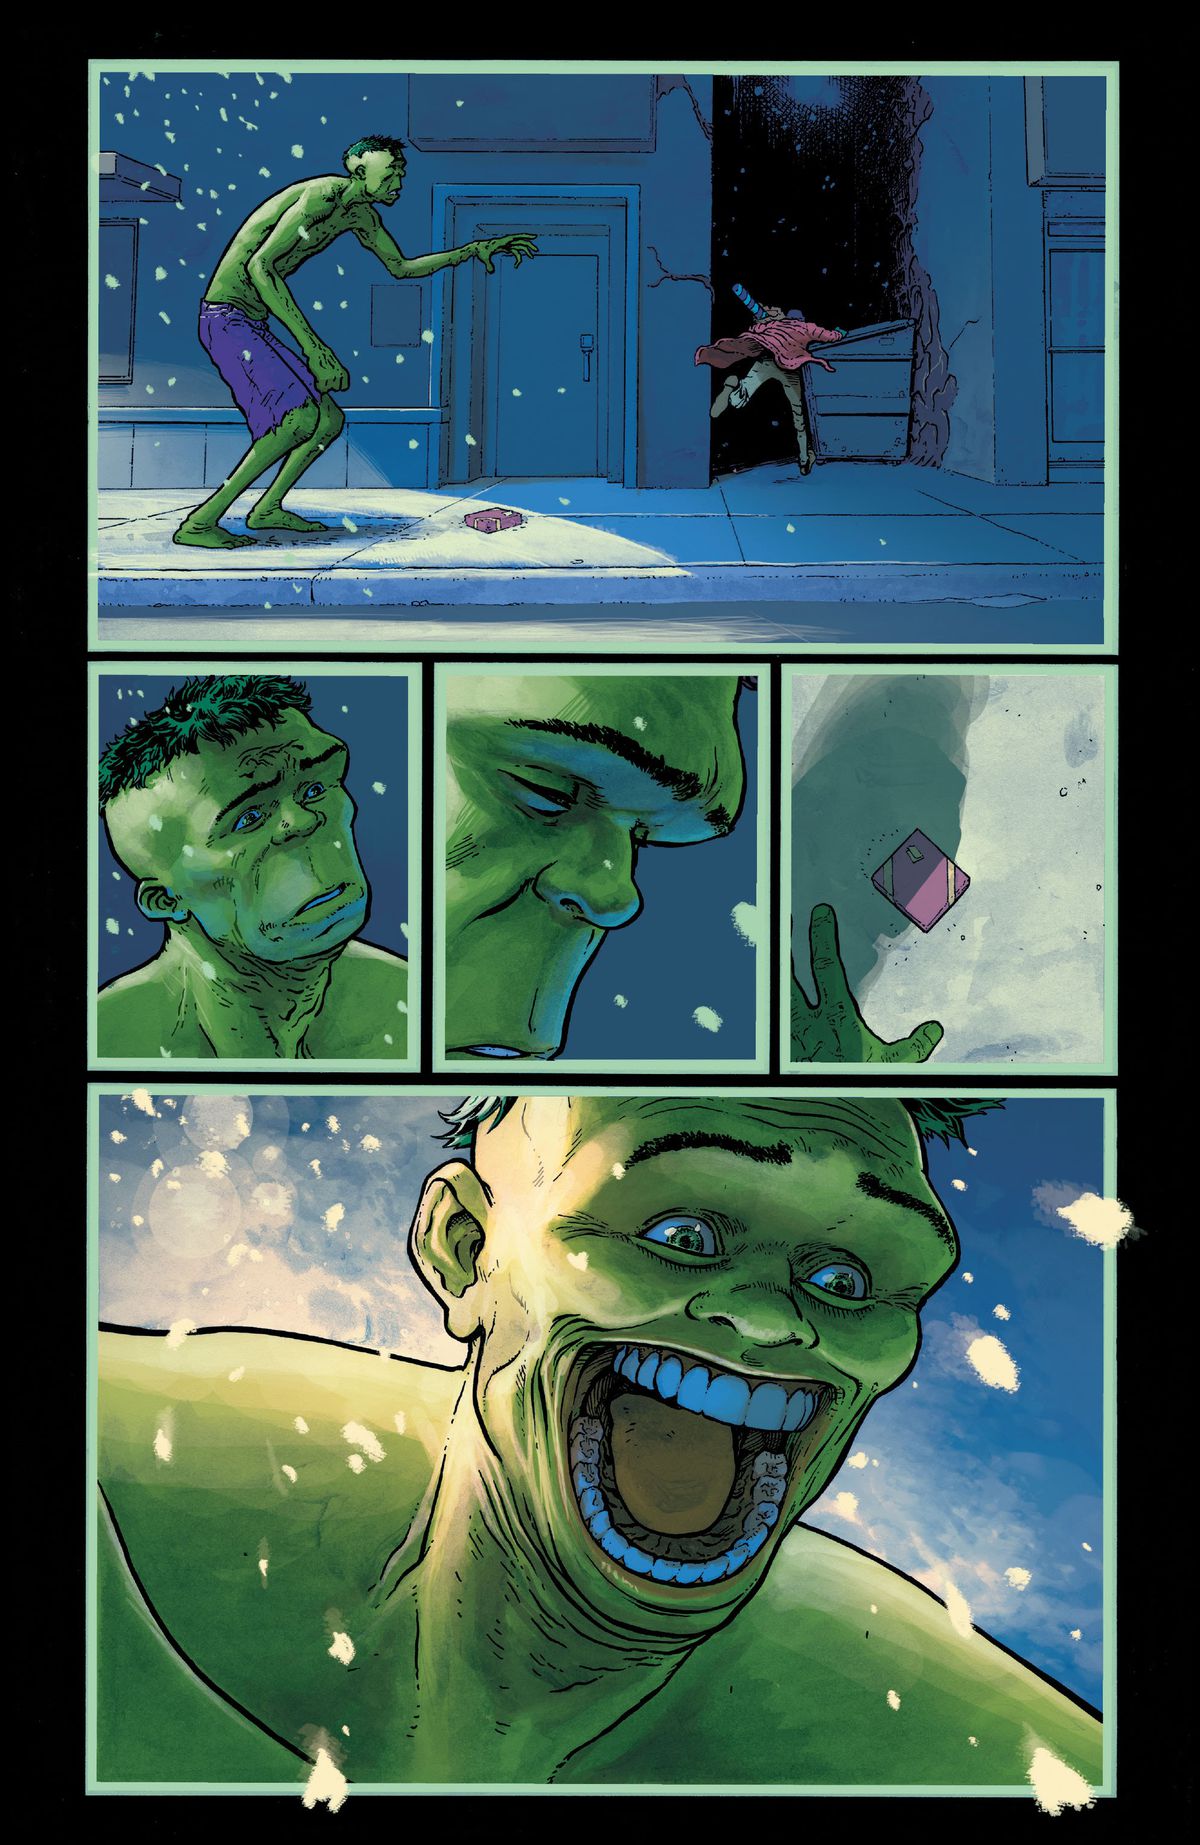 Un acquirente di Natale a tarda notte su una strada innevata di New York fugge da Hulk, lasciandosi dietro un regalo incartato.  Hulk reagisce tristemente alla paura dell'uomo, ma poi sorride enorme e grottescamente quando nota il regalo caduto, in King in Black: Immortal Hulk, Marvel Comics (2020). 